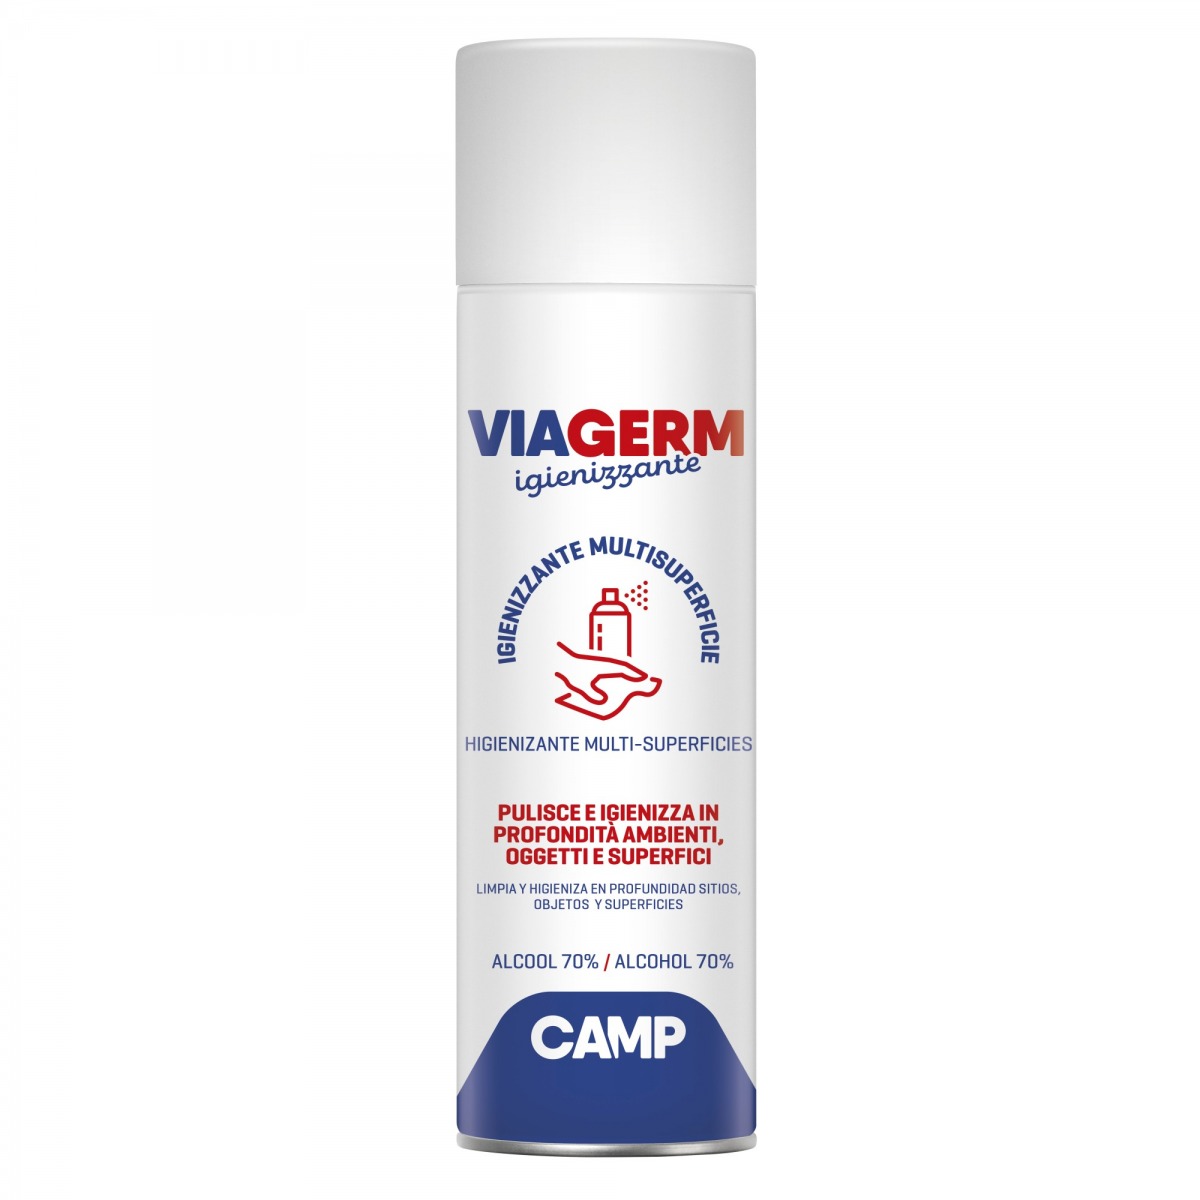 Detergente higienizante multisuperficies en spray con 70% de alcohol Viagerm CAM-3033-500 | QUÍMICOS